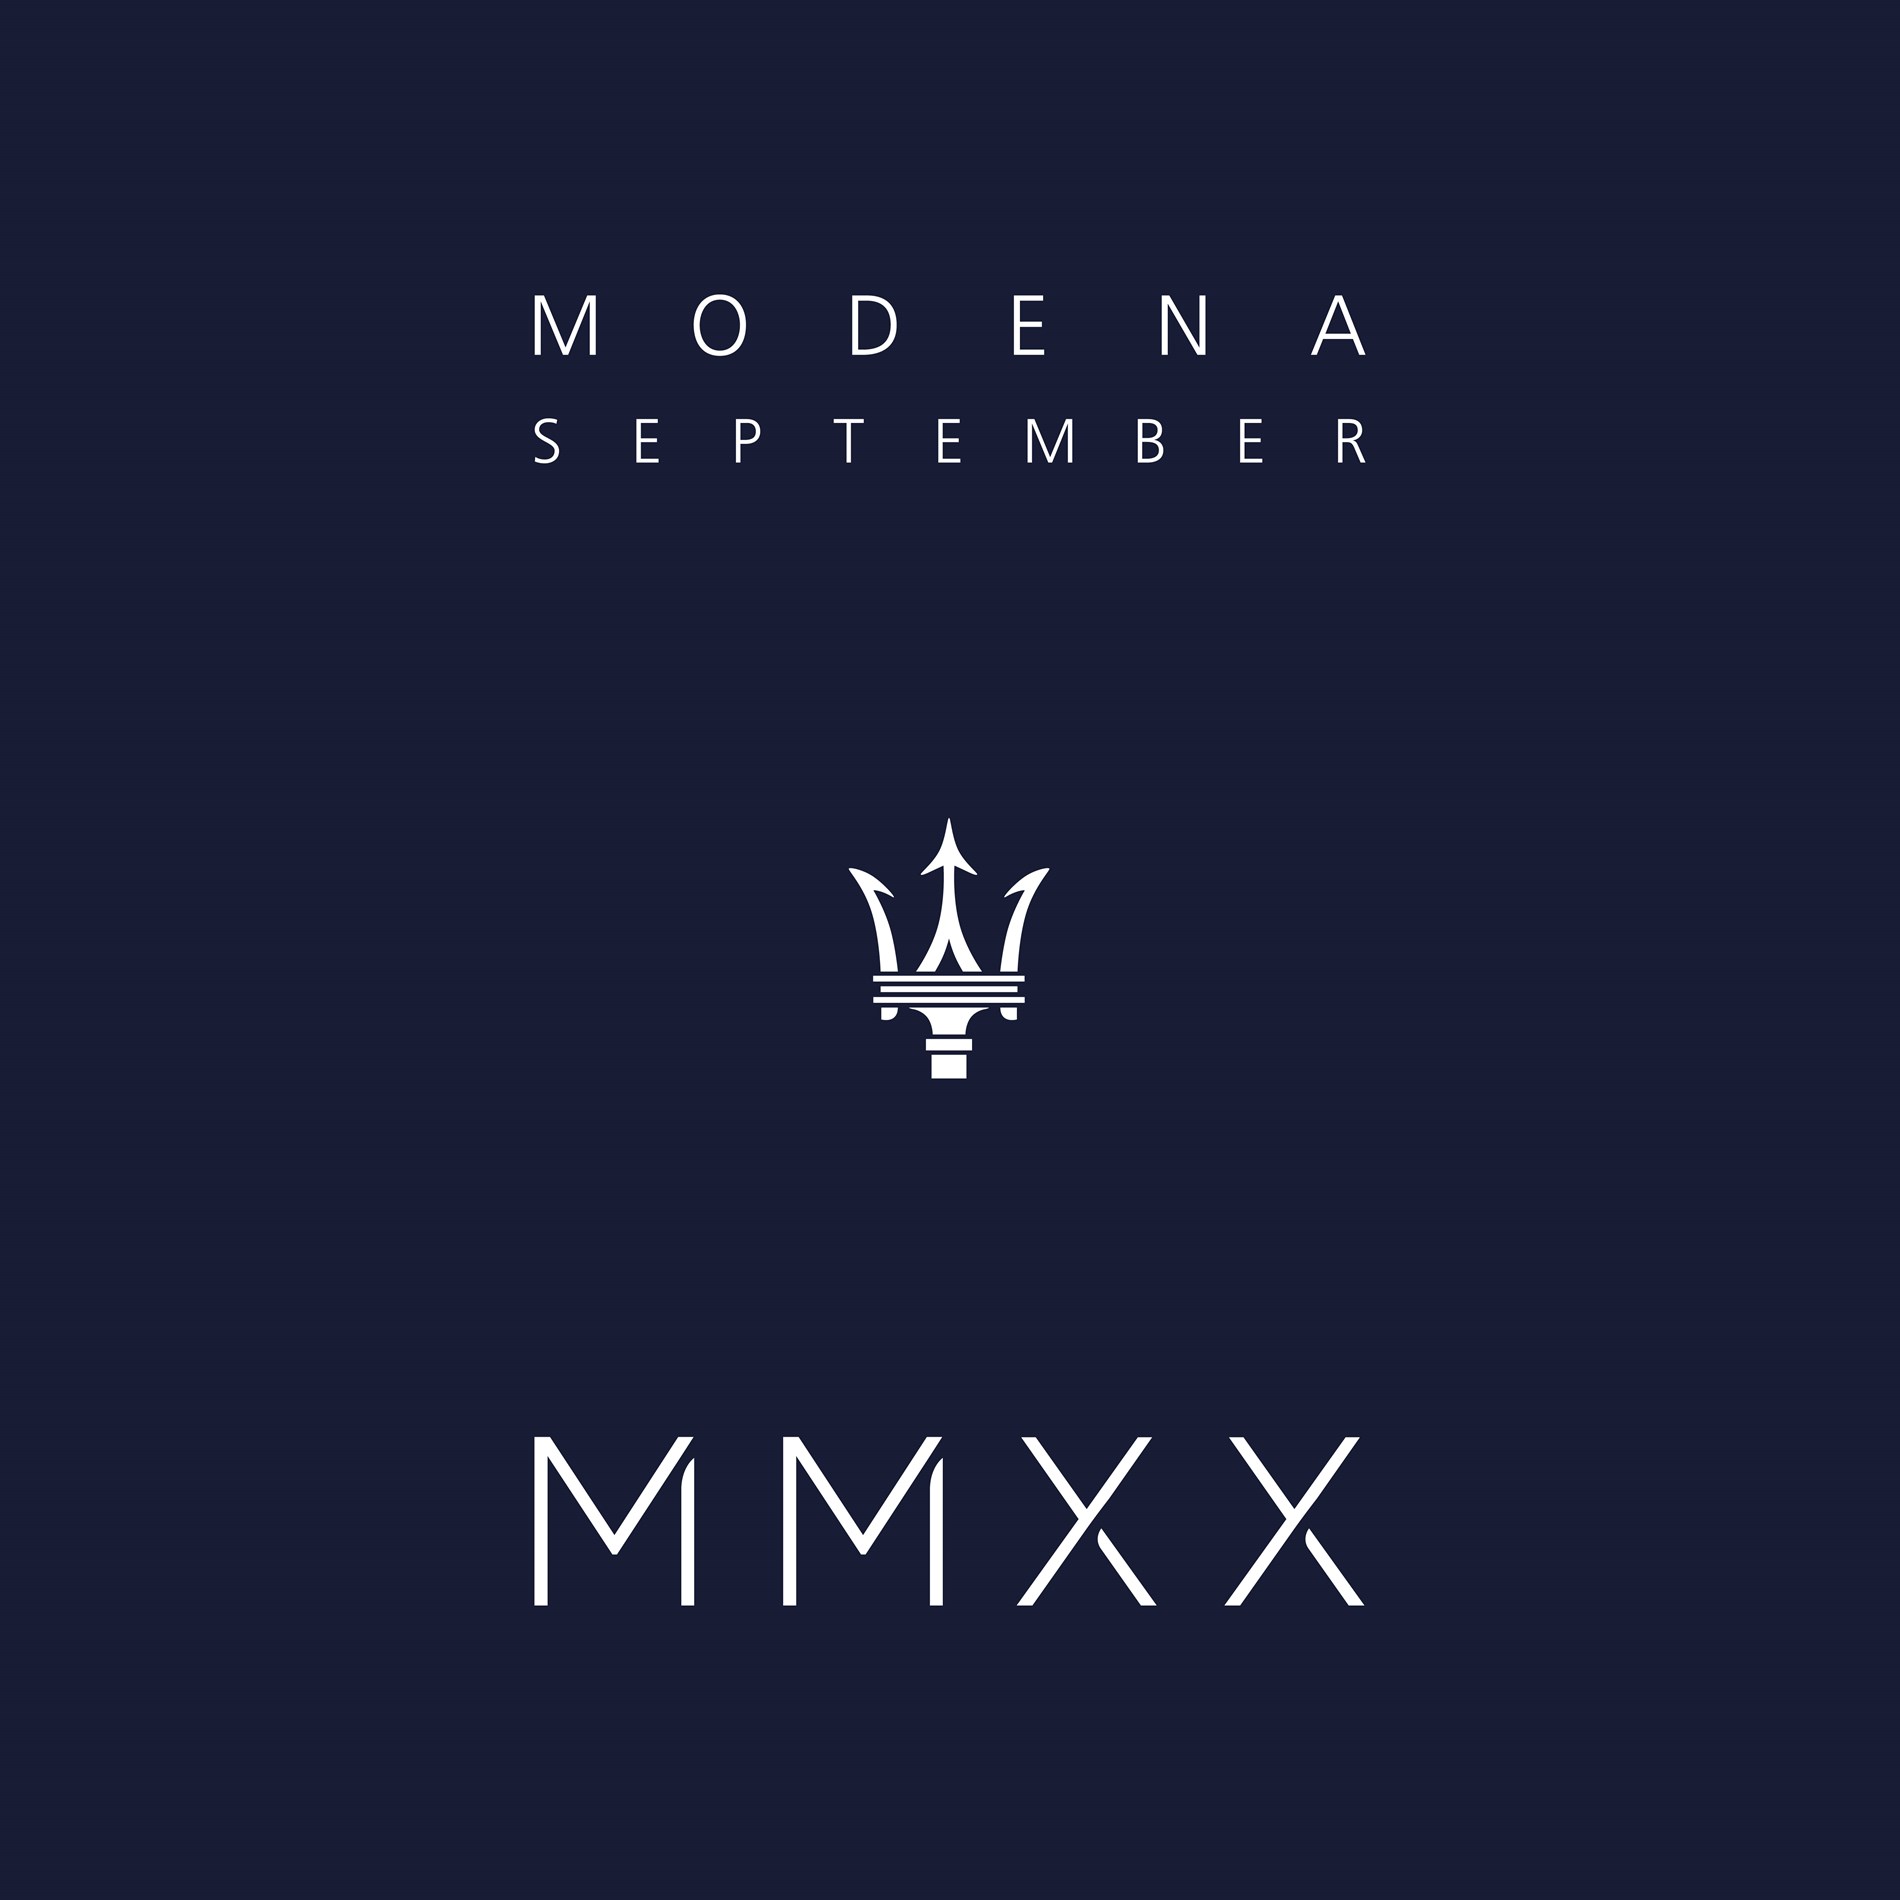 MMXX: The Way Forward September 2020 - Modena